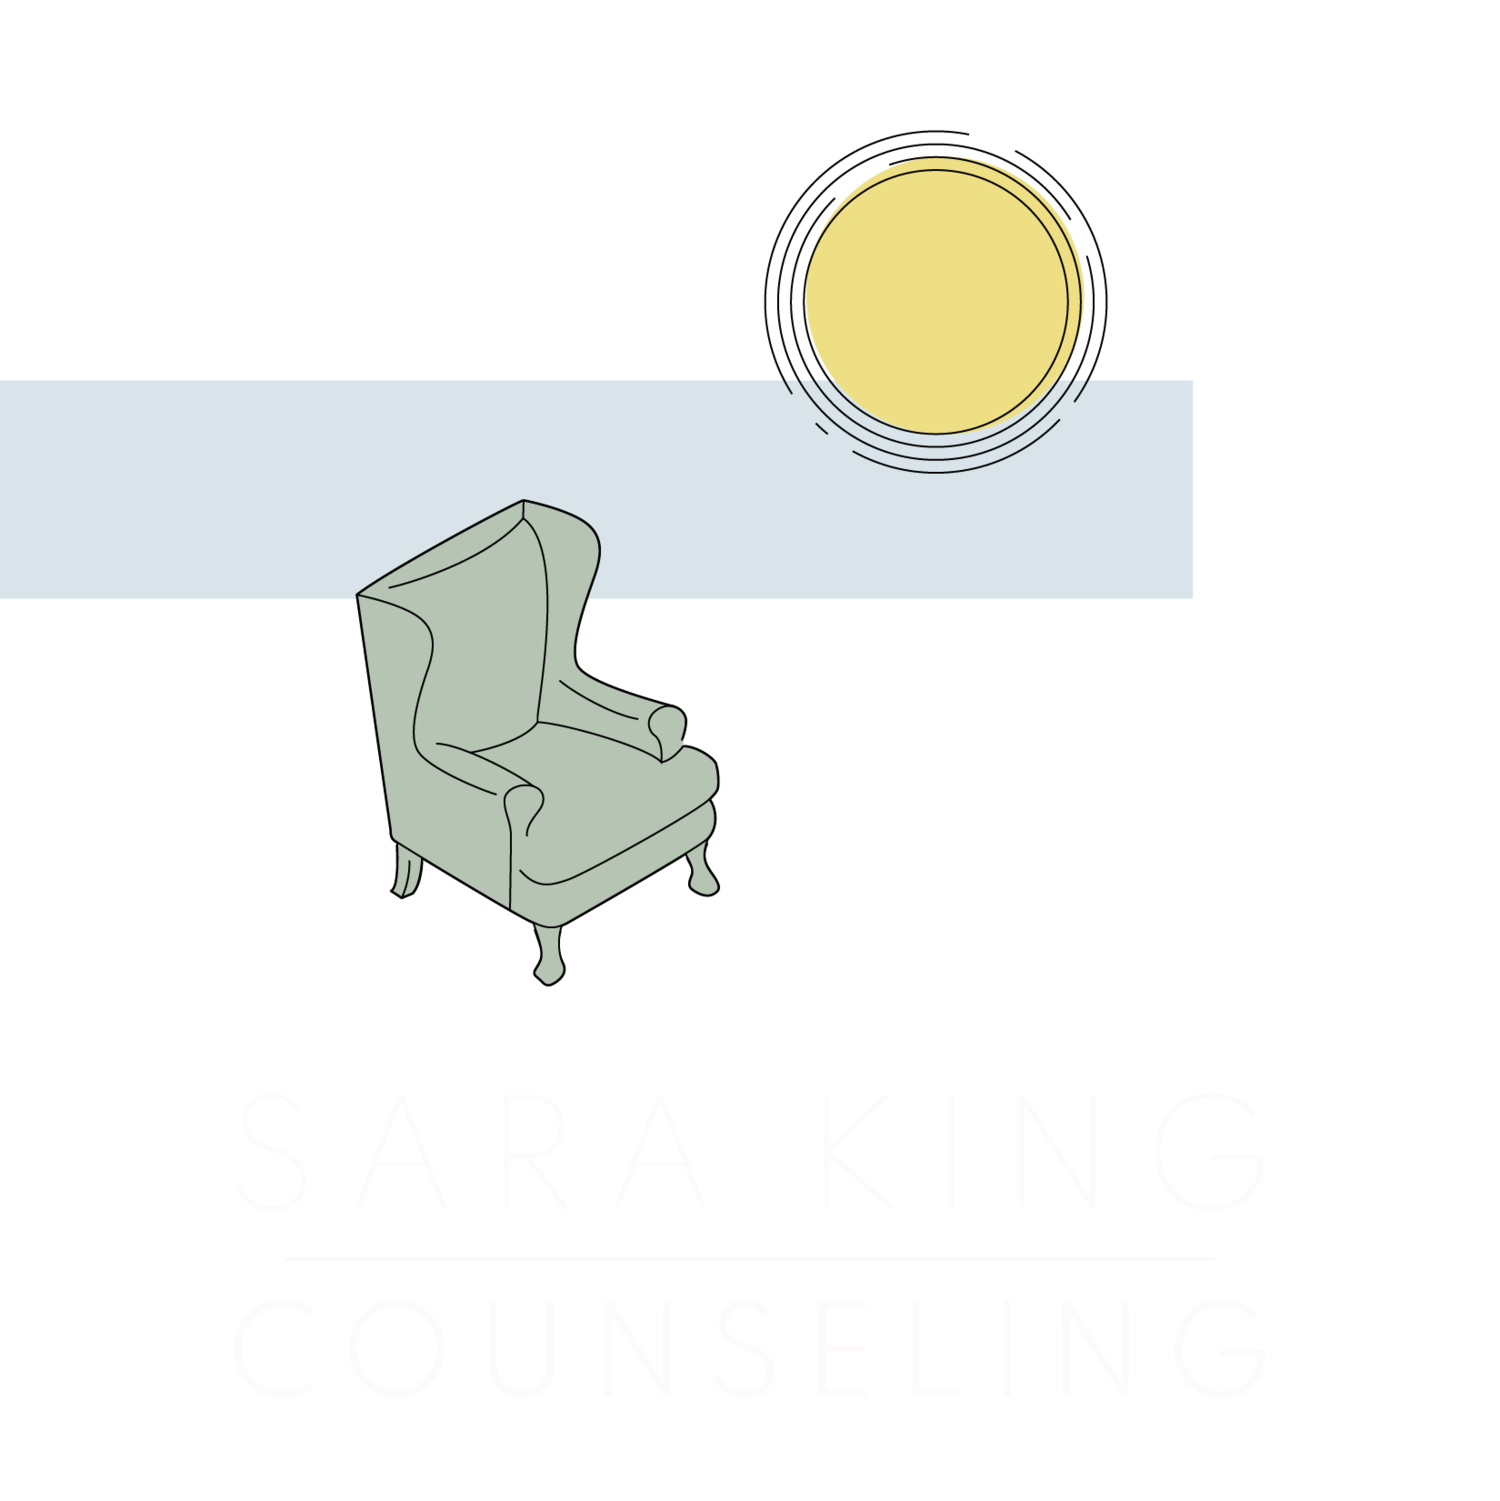 Sara King Counseling